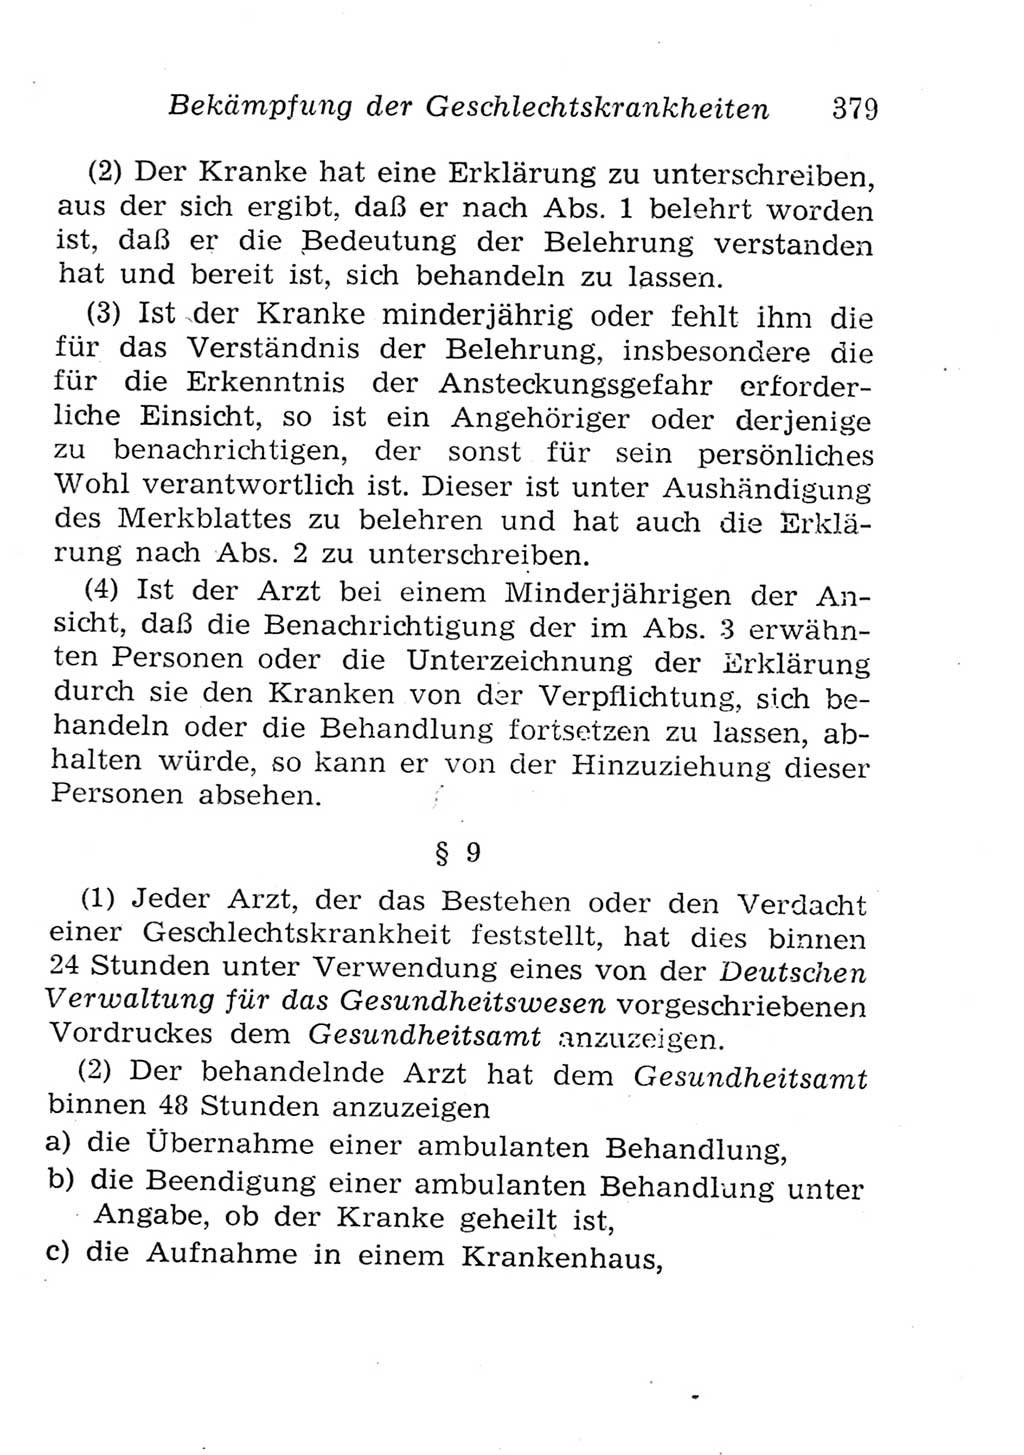 Strafgesetzbuch (StGB) und andere Strafgesetze [Deutsche Demokratische Republik (DDR)] 1957, Seite 379 (StGB Strafges. DDR 1957, S. 379)